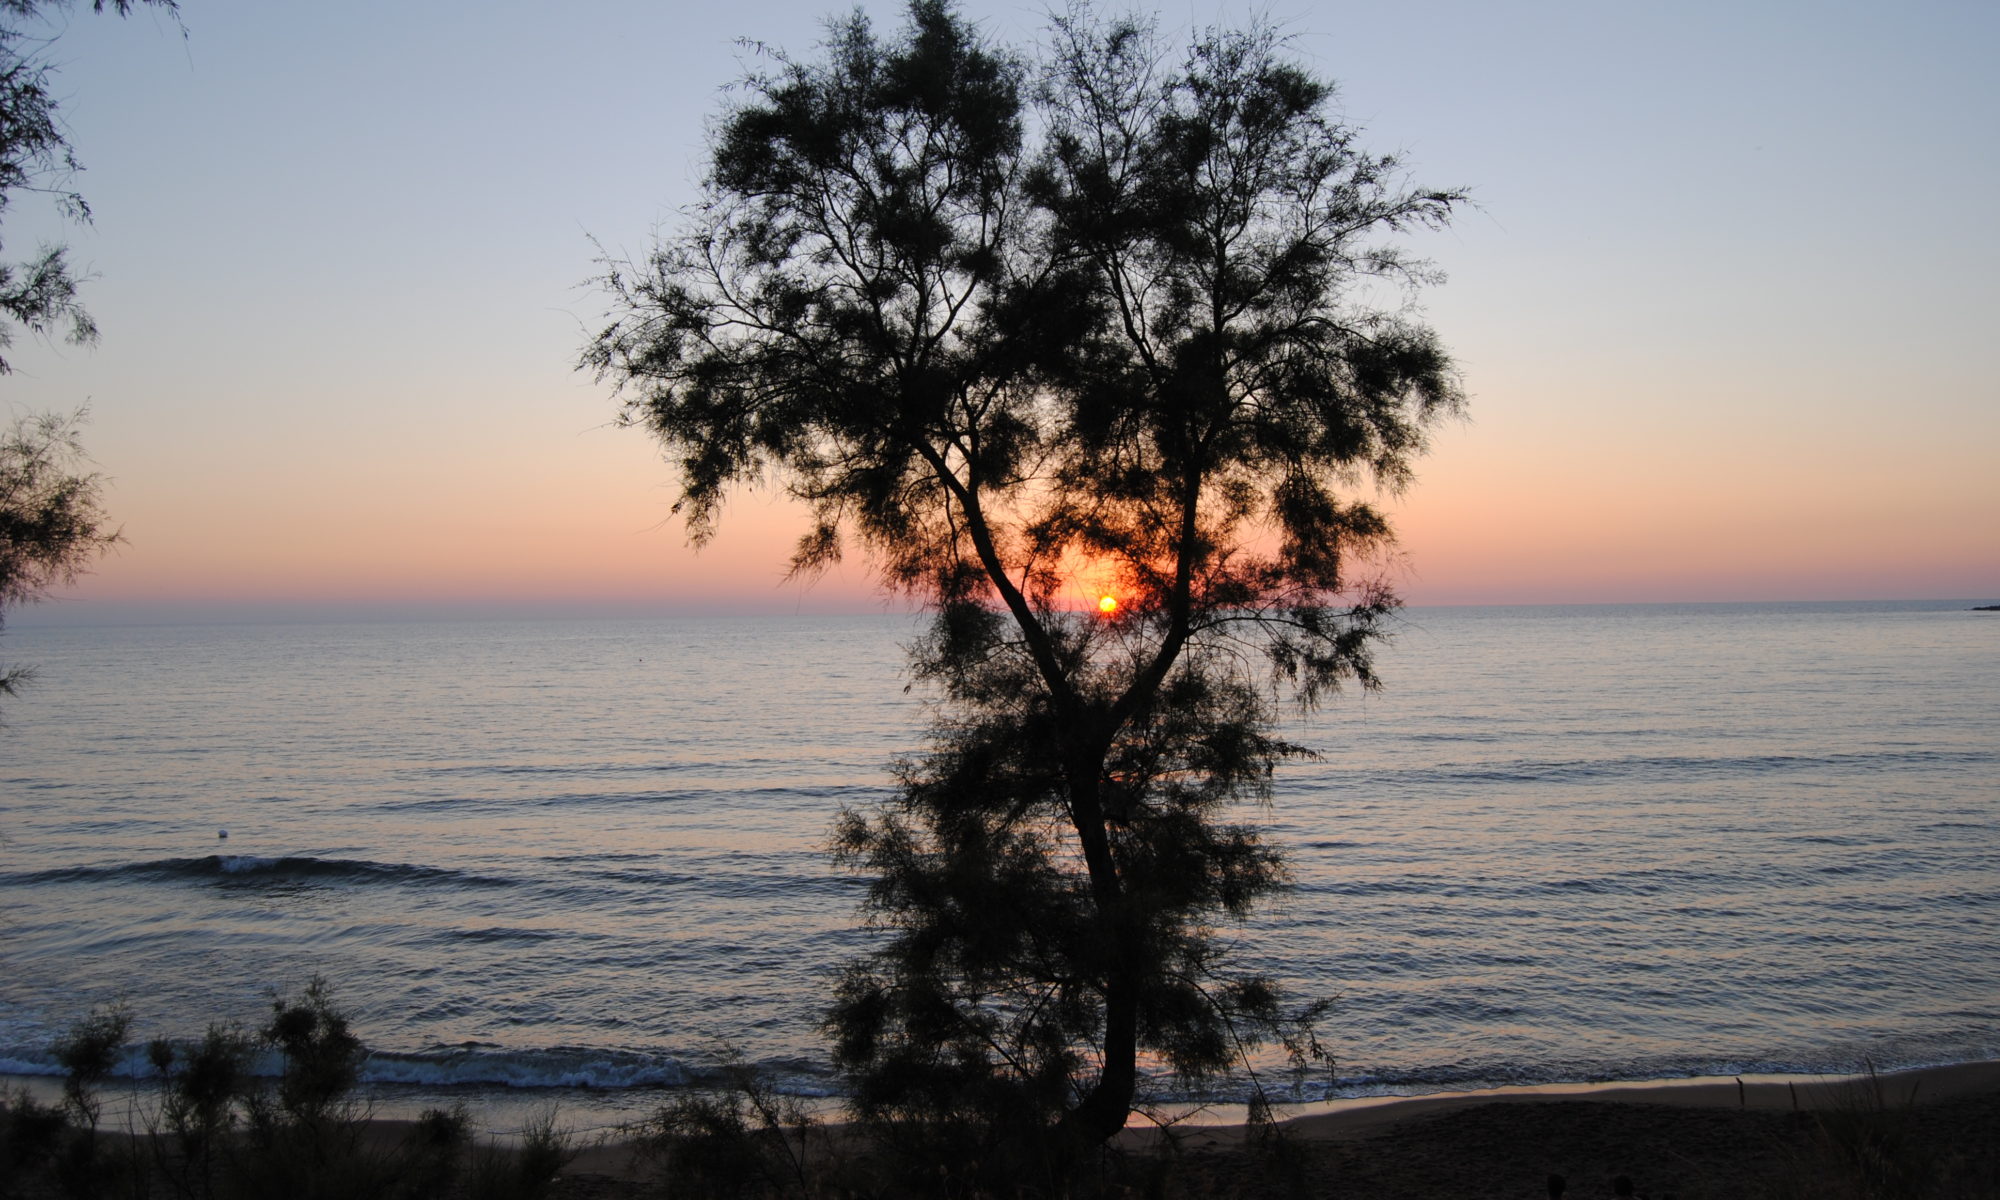 Suggestivo tramonto sul mare dal golfo di Baratti, in Toscana relativo ad articolo sulle stagioni